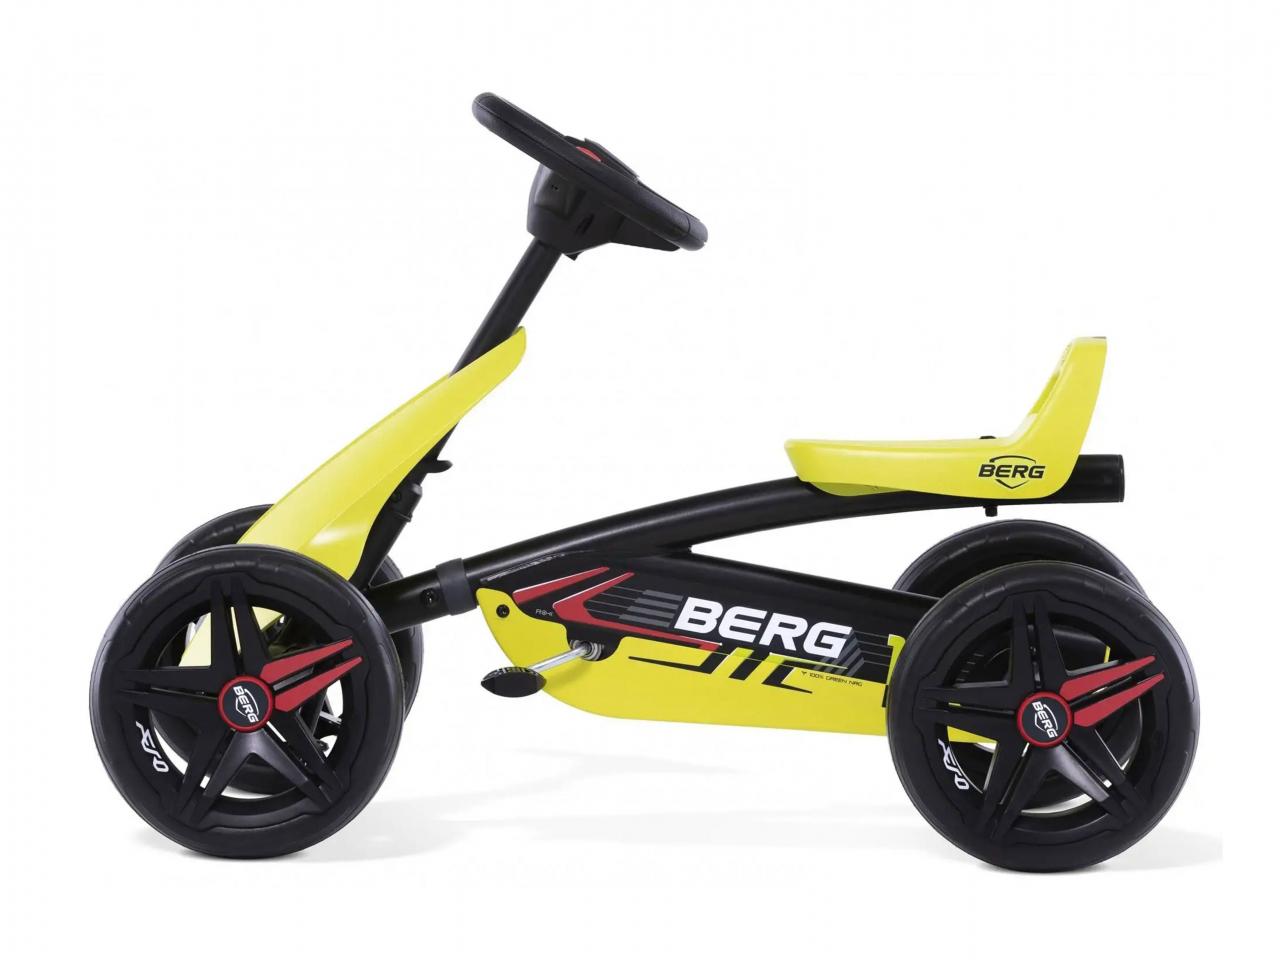 Šlapací čtyřkolka BERG Buzzy Racing Aero, žlutá